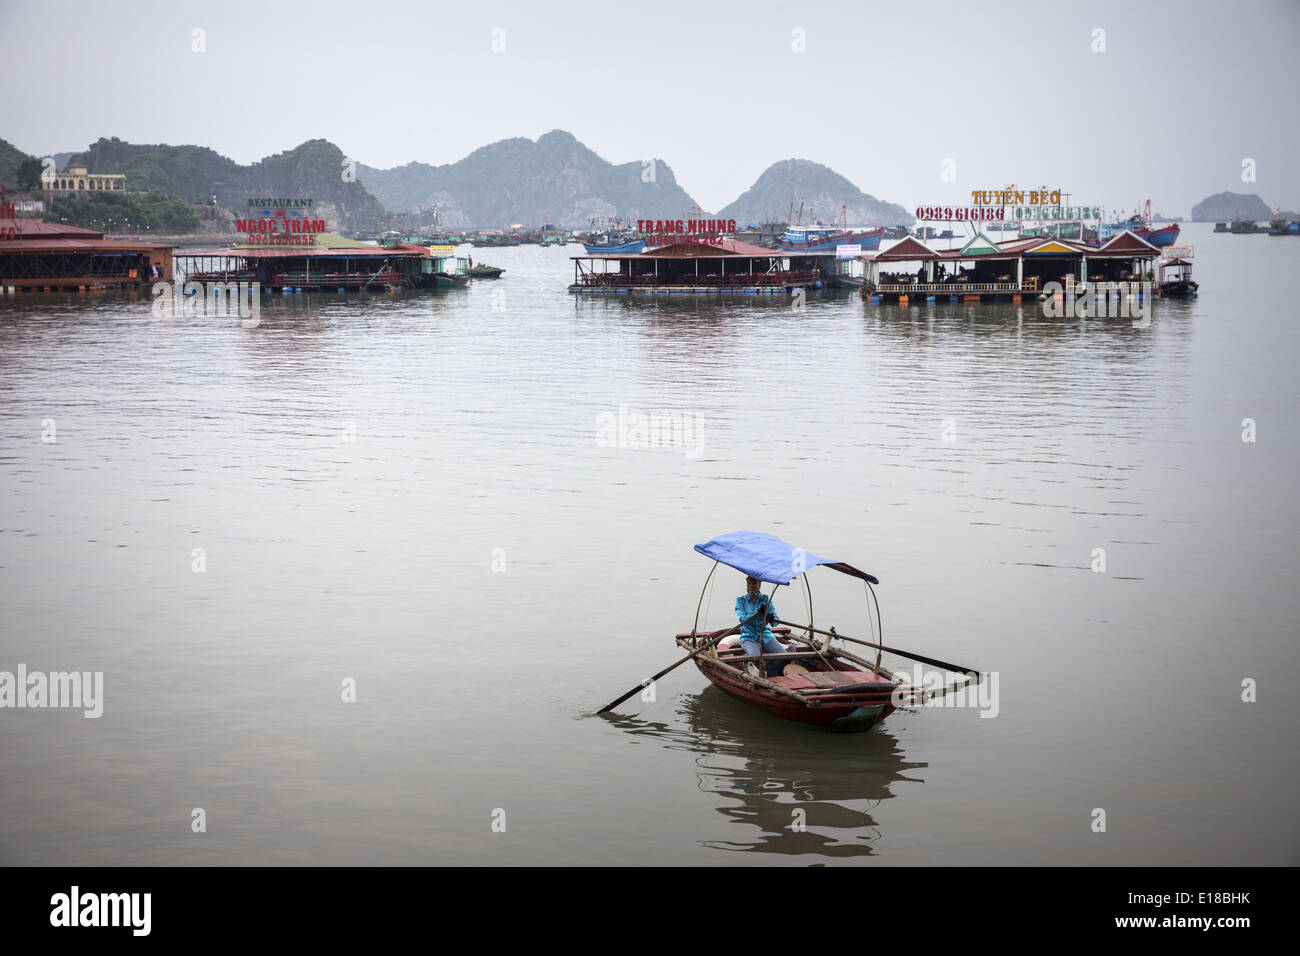 Un barcaiolo remare verso riva in cerca di clienti per i ristoranti che si trovano nel mezzo della baia. Foto Stock